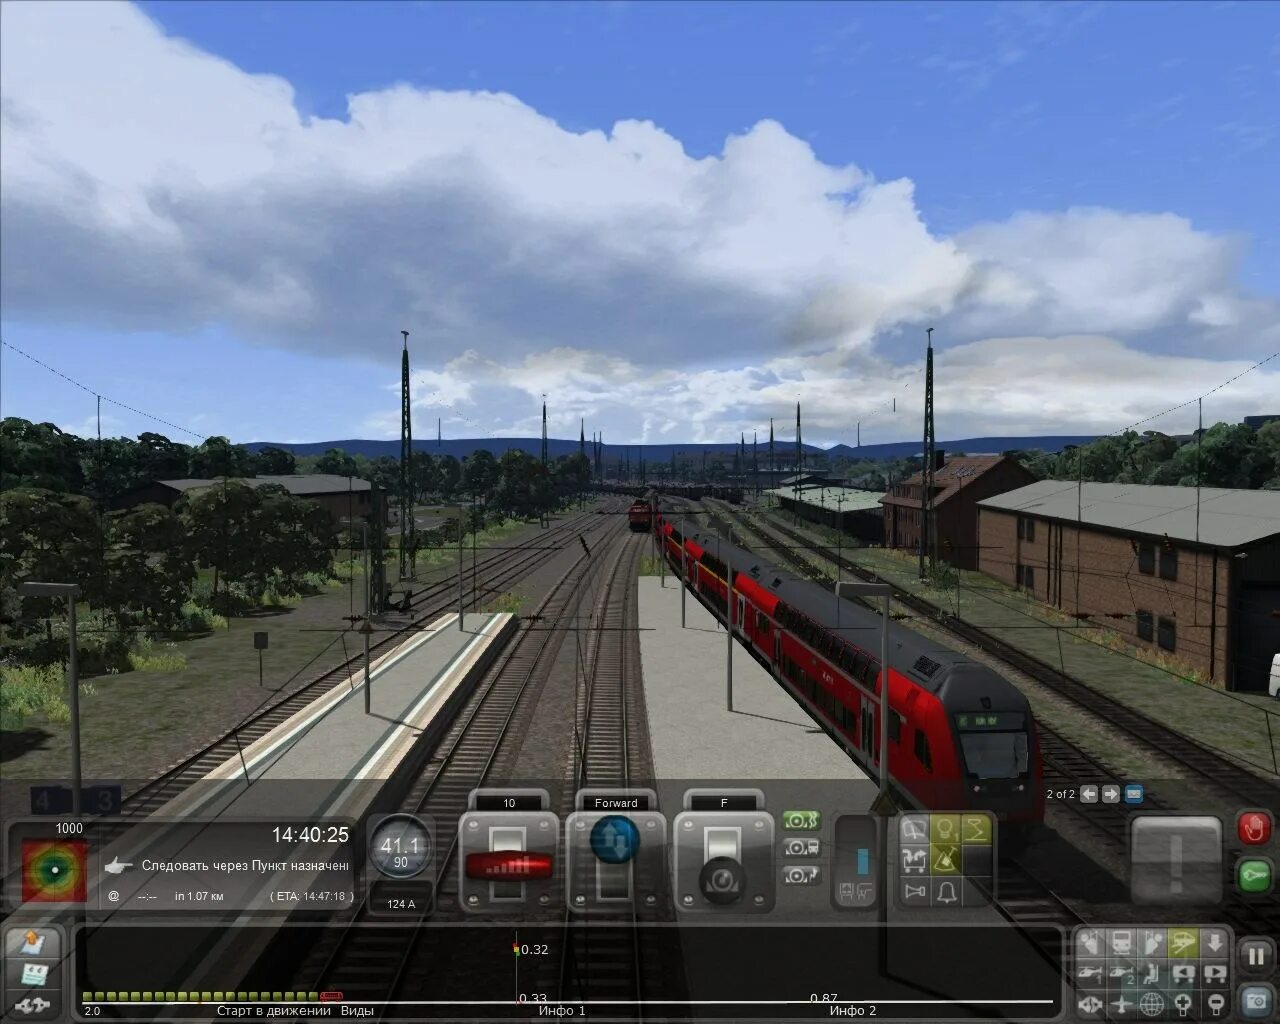 Симулятор поезда Train Simulator. Симулятор поезда РЖД 2. Траин симулятор 2016. Train Simulator 2016: Steam Edition. Бесплатные игры поезда симуляторы